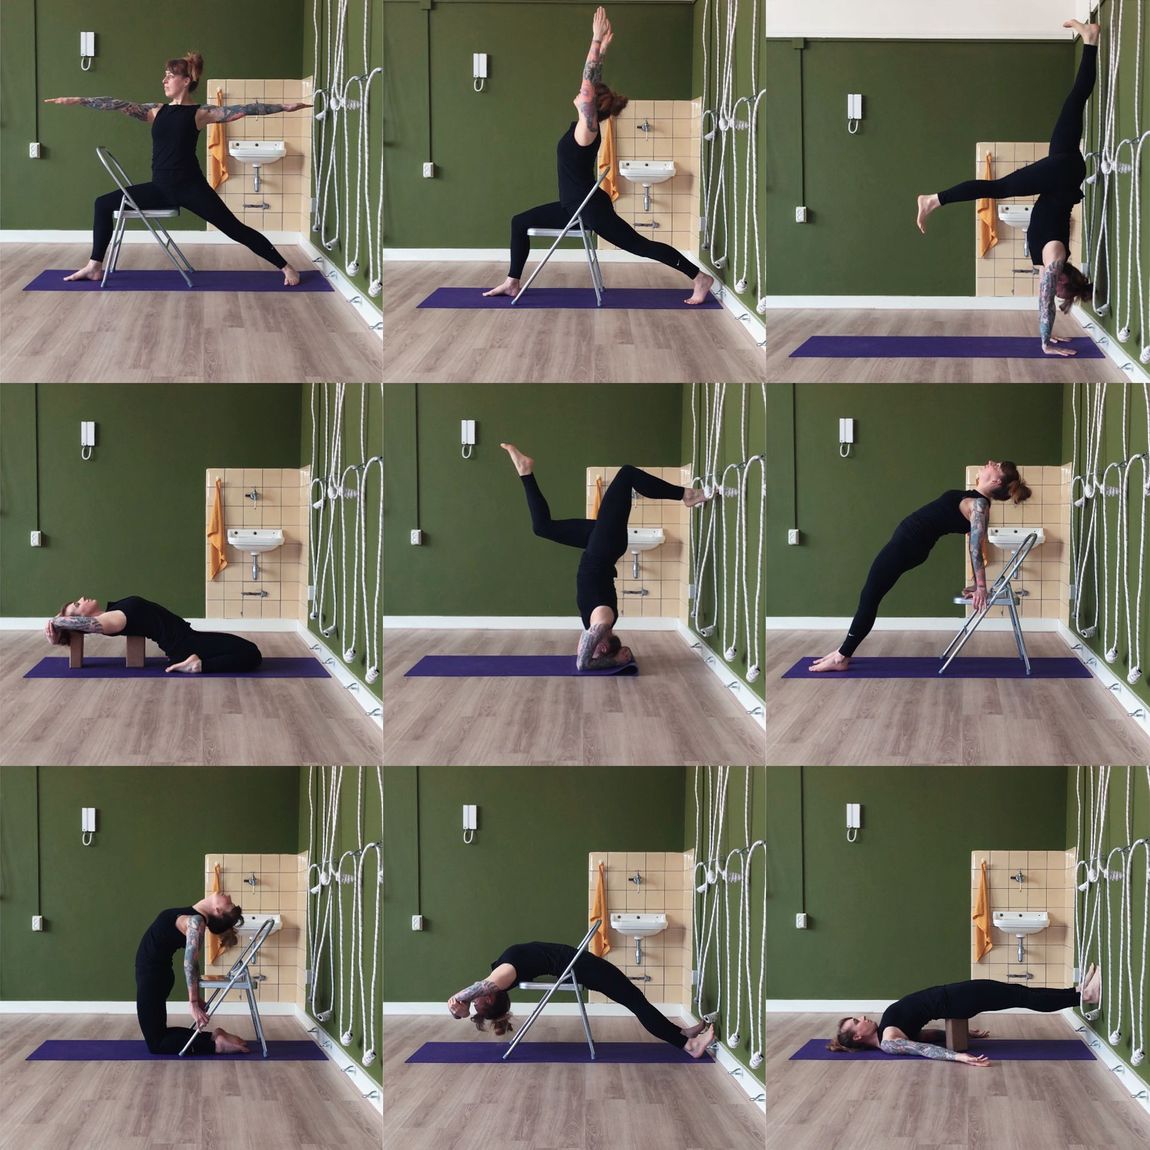 9 Verschillende yogahoudingen ondersteund met hulpmiddelen zoals een yogastoel, yogablokken en de muur.